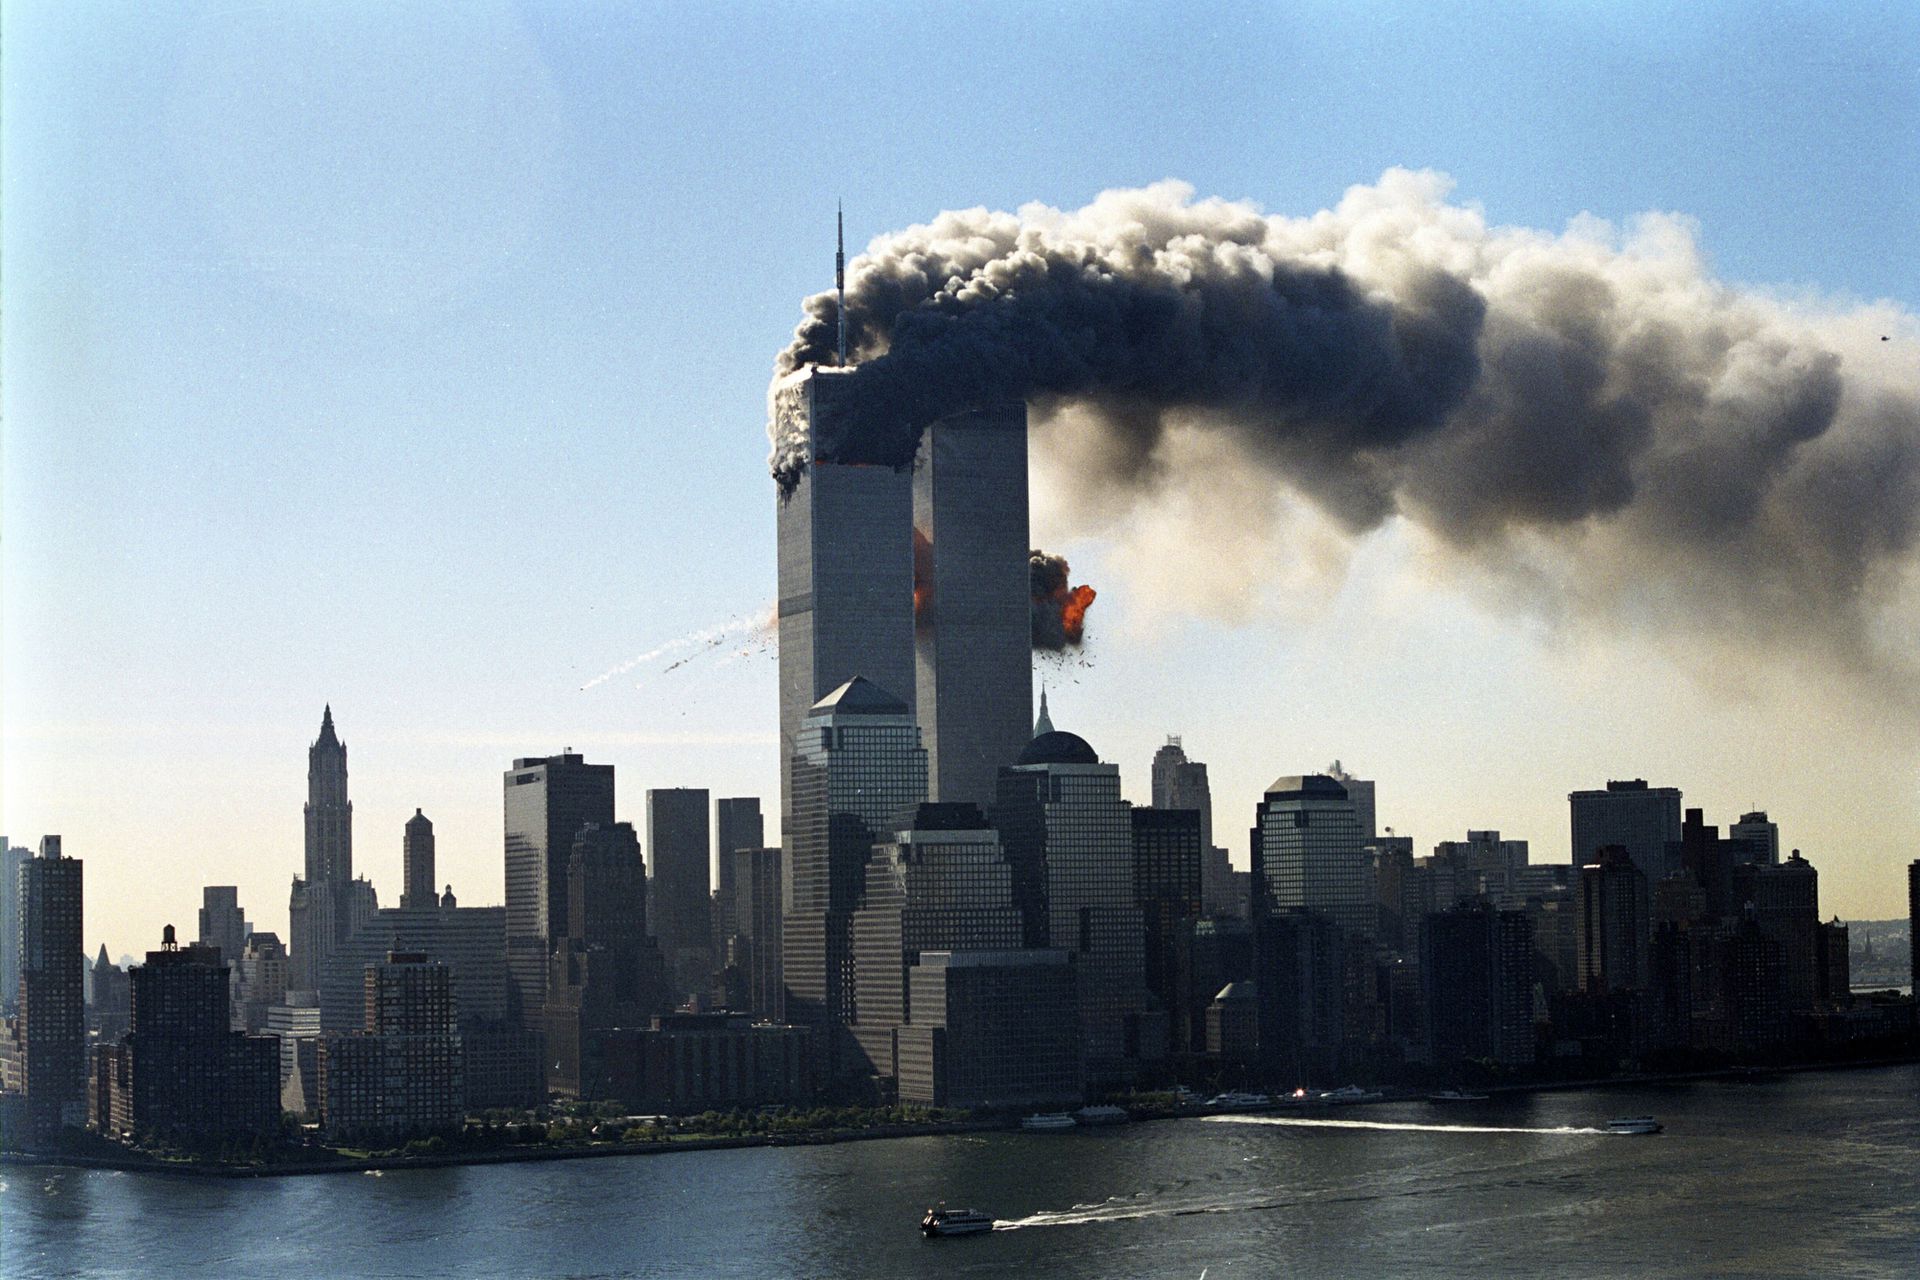 11 de septiembre: Se cumplen 20 años del atentado a las Torres Gemelas